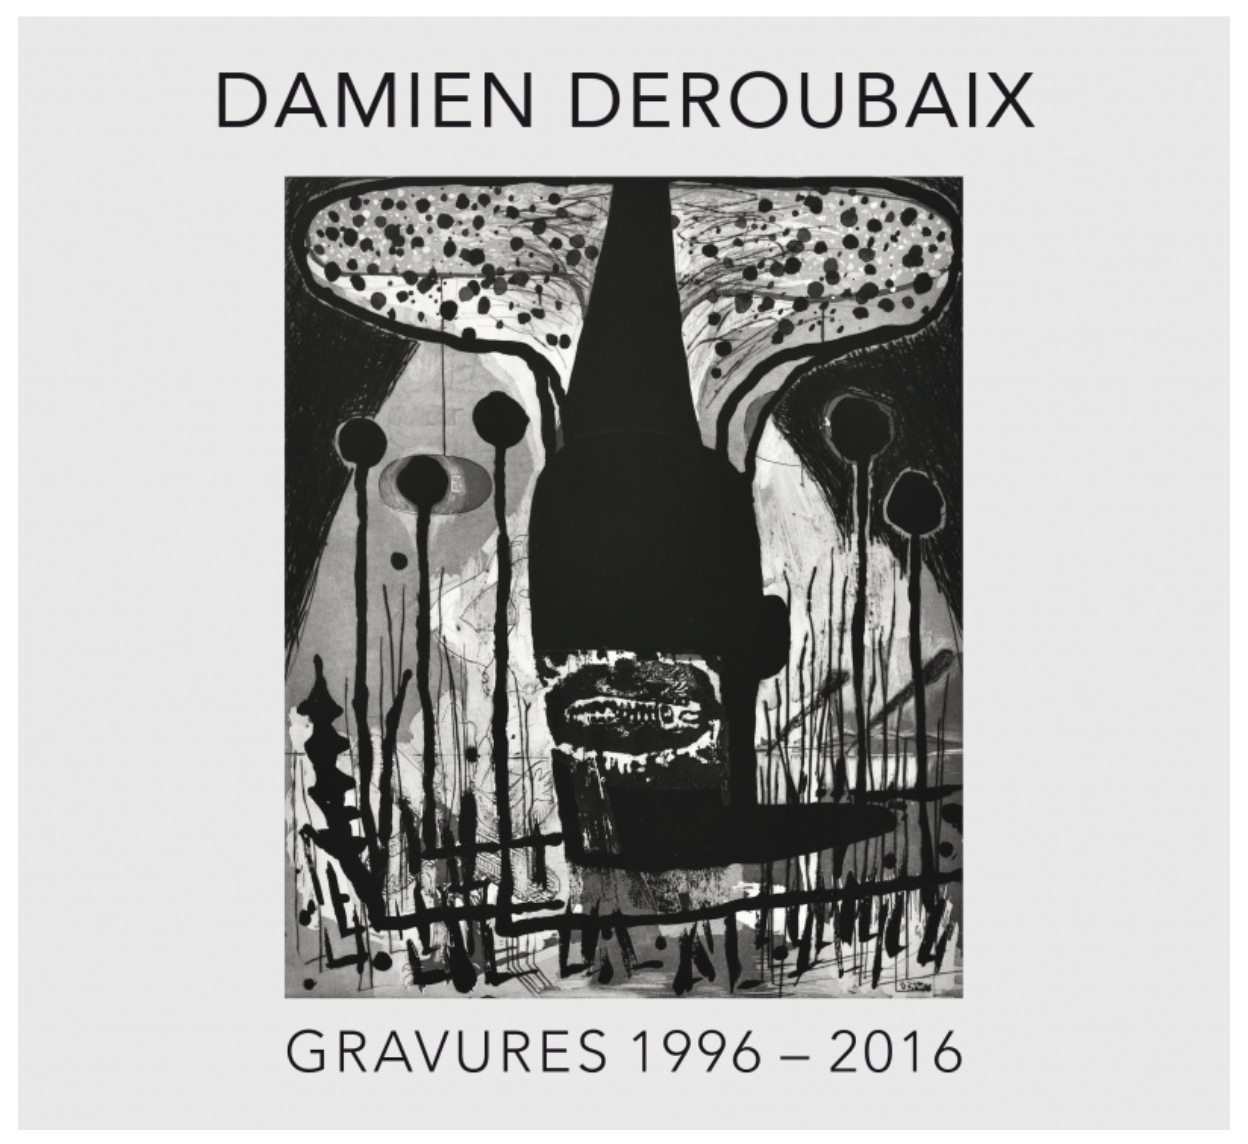 Damien Deroubaix Gravures 1996 - 2016